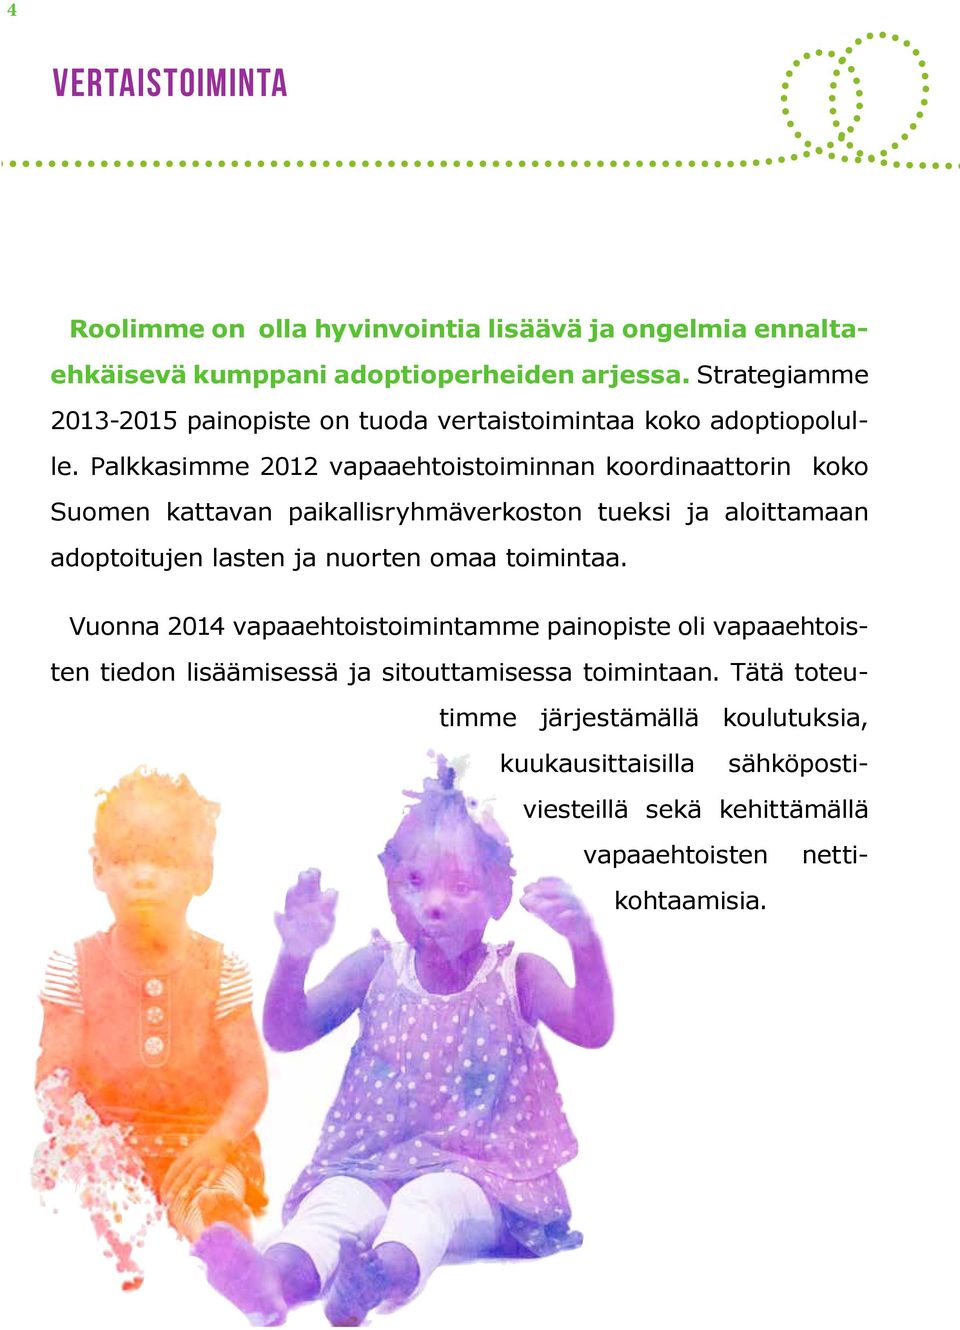 Palkkasimme 2012 vapaaehtoistoiminnan koordinaattorin koko Suomen kattavan paikallisryhmäverkoston tueksi ja aloittamaan adoptoitujen lasten ja nuorten